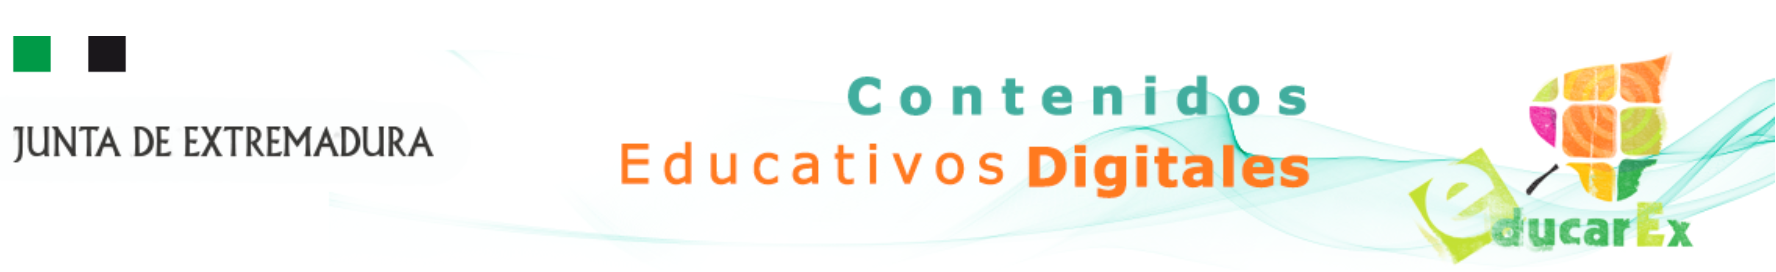 Cabecera de la web  de contenidos educativos digitales de la Junta de Extremadura